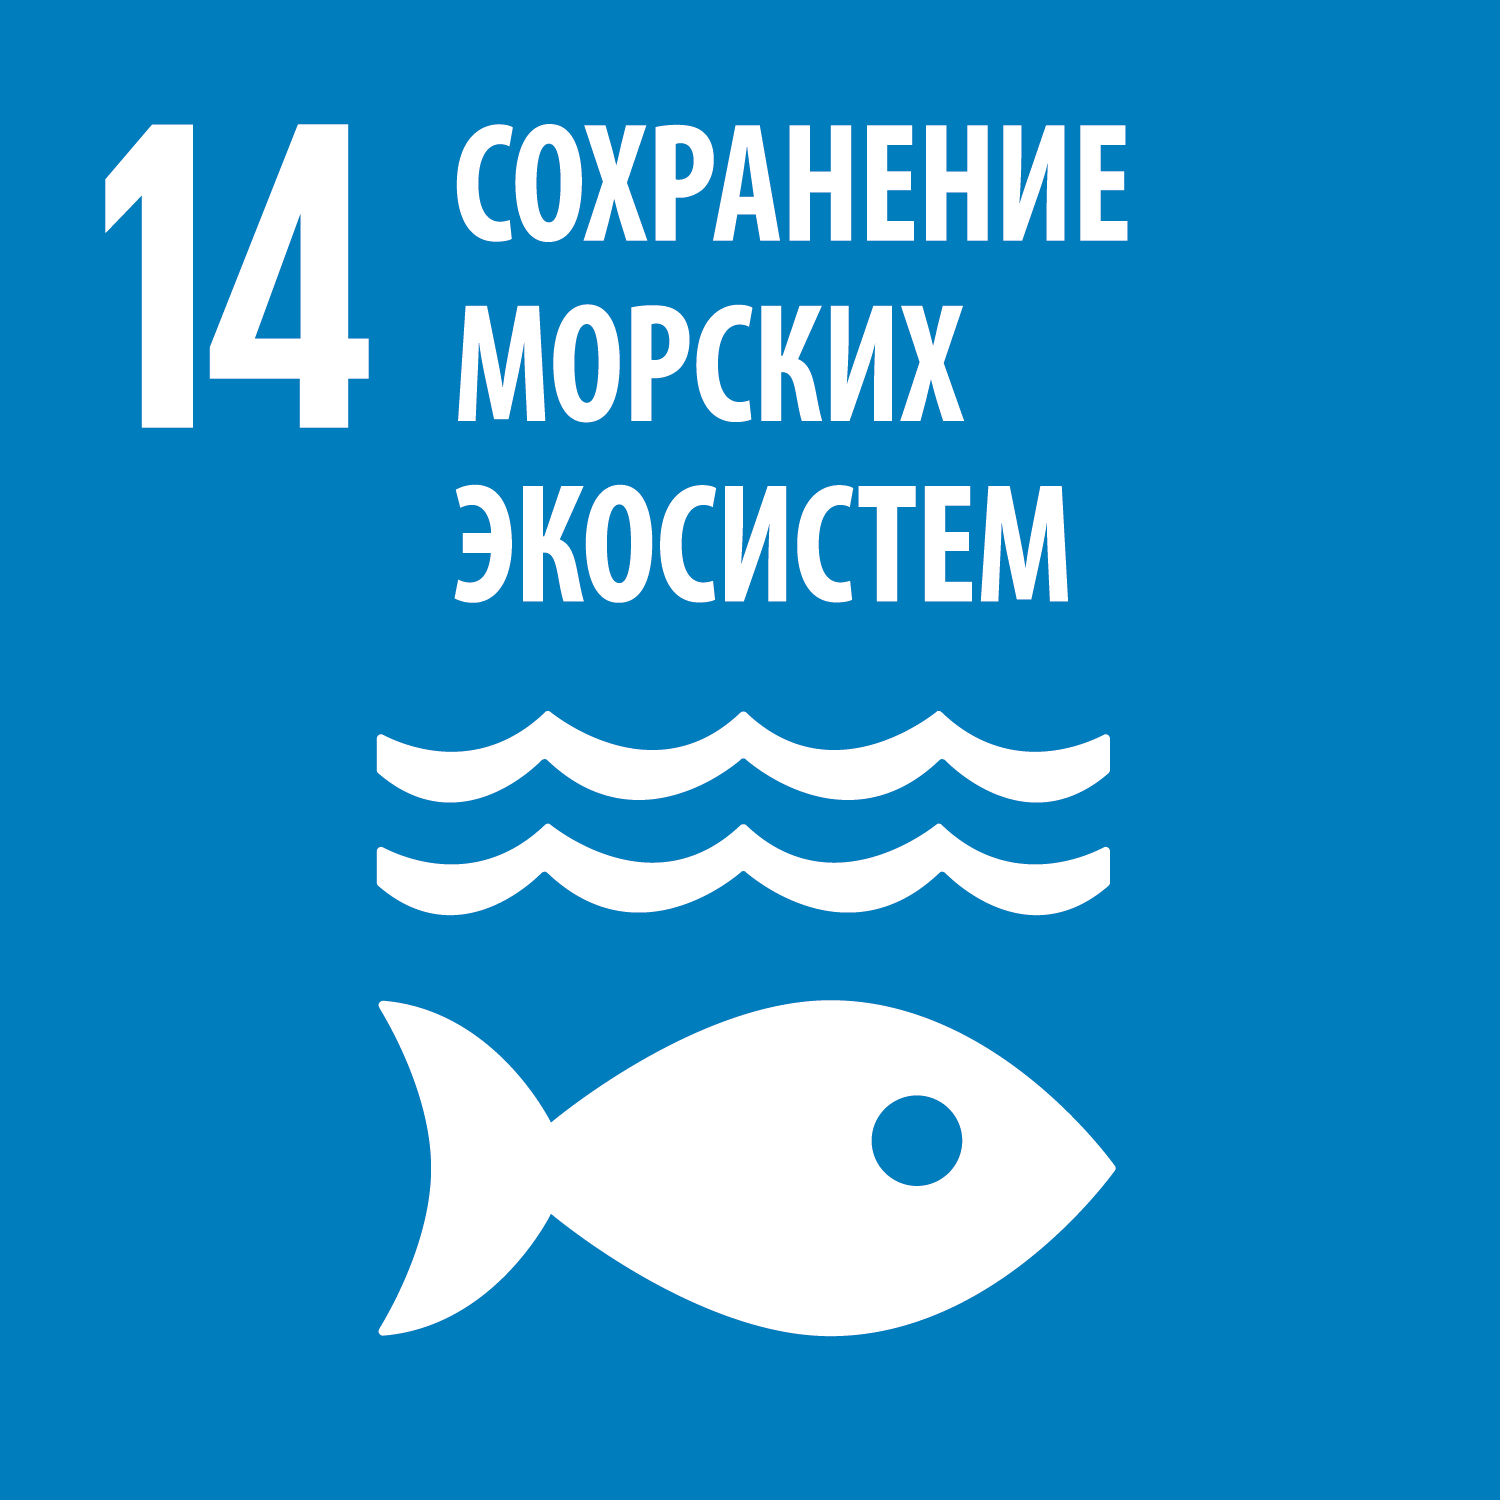 Цель 14 - Сохранение и рациональное использование океанов, морей и морских ресурсов в интересах устойчивого развития